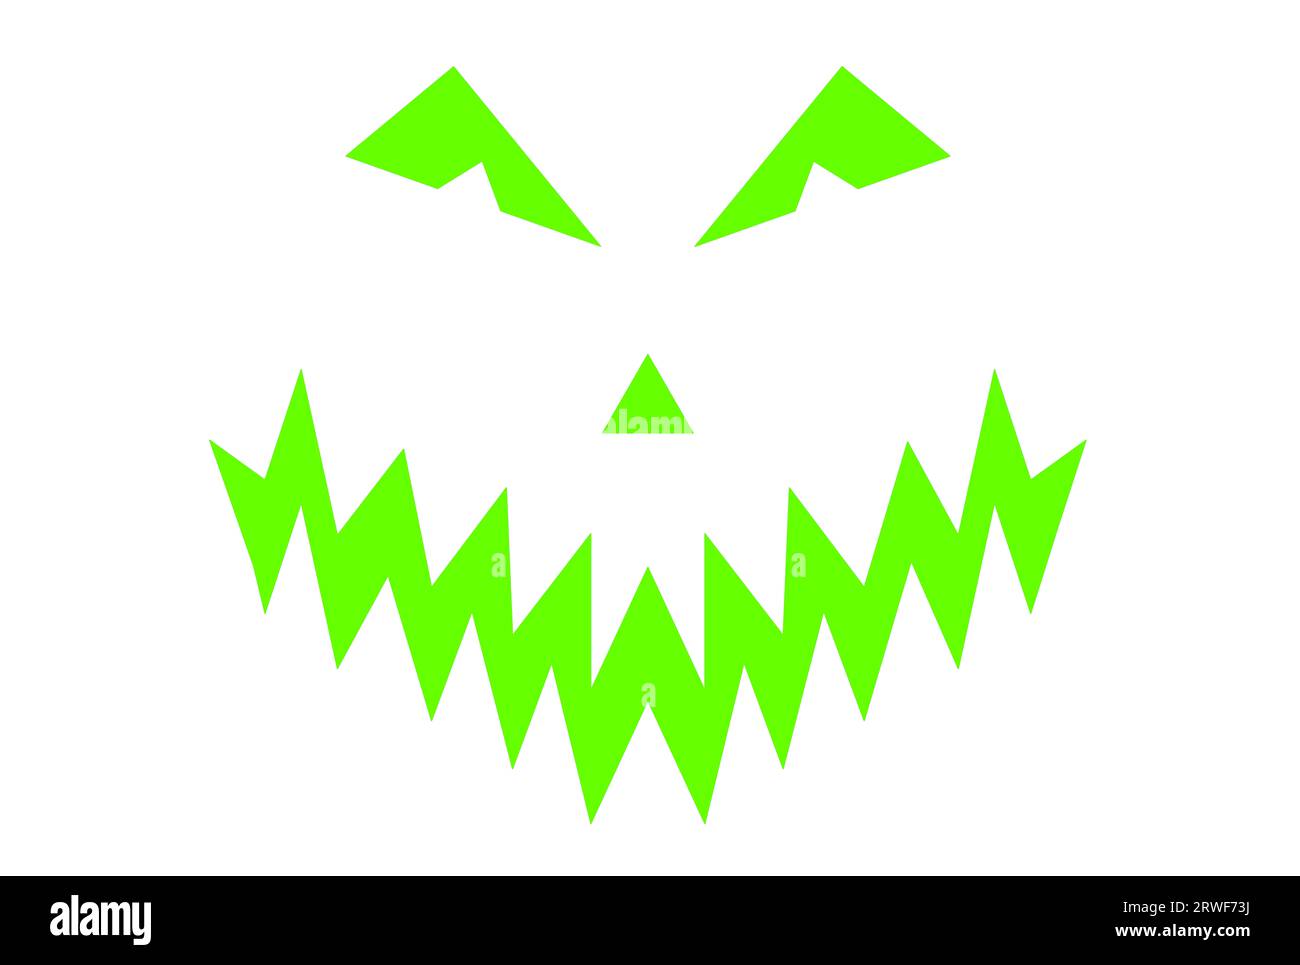 Halloween, Halloween party, fantasma dai denti affilati, maschera mostro demoniaca pronti a chiedere: Trucco o regalo? illustrazione grafica Foto Stock